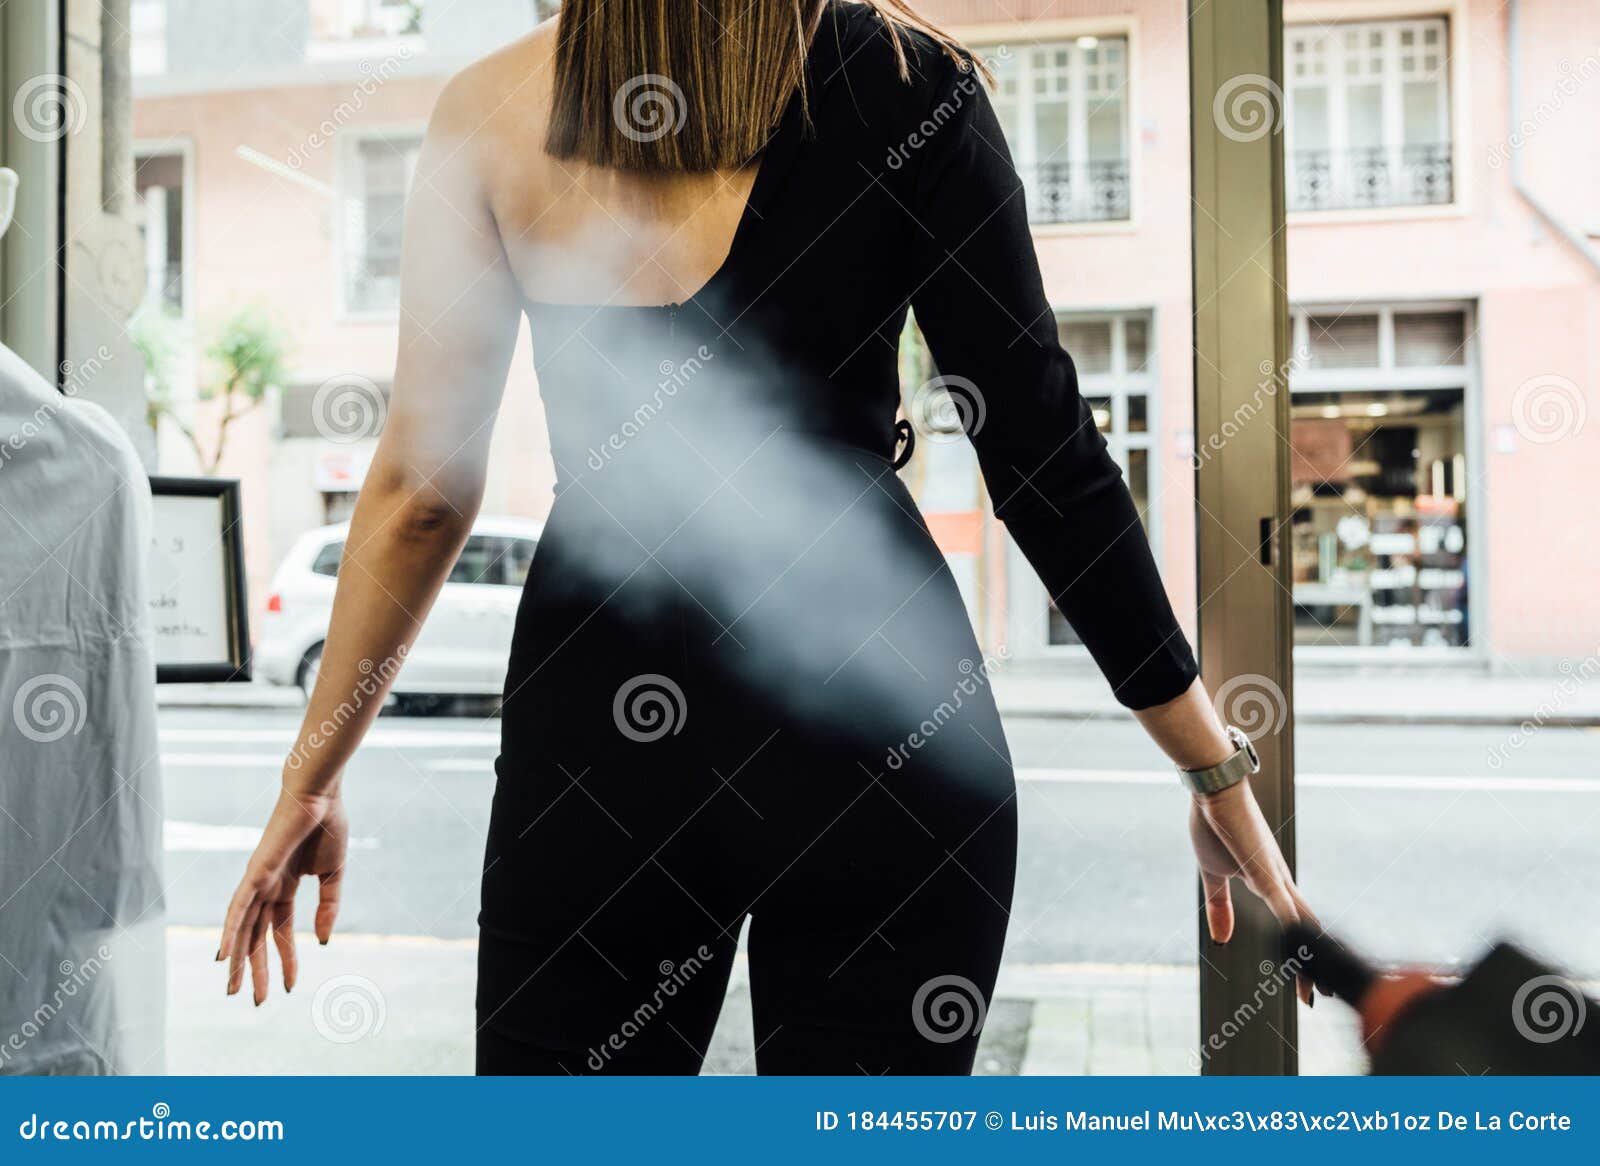 clienta desinfectÃÂ¡ndose con vapor en la puerta de entrada al comercio